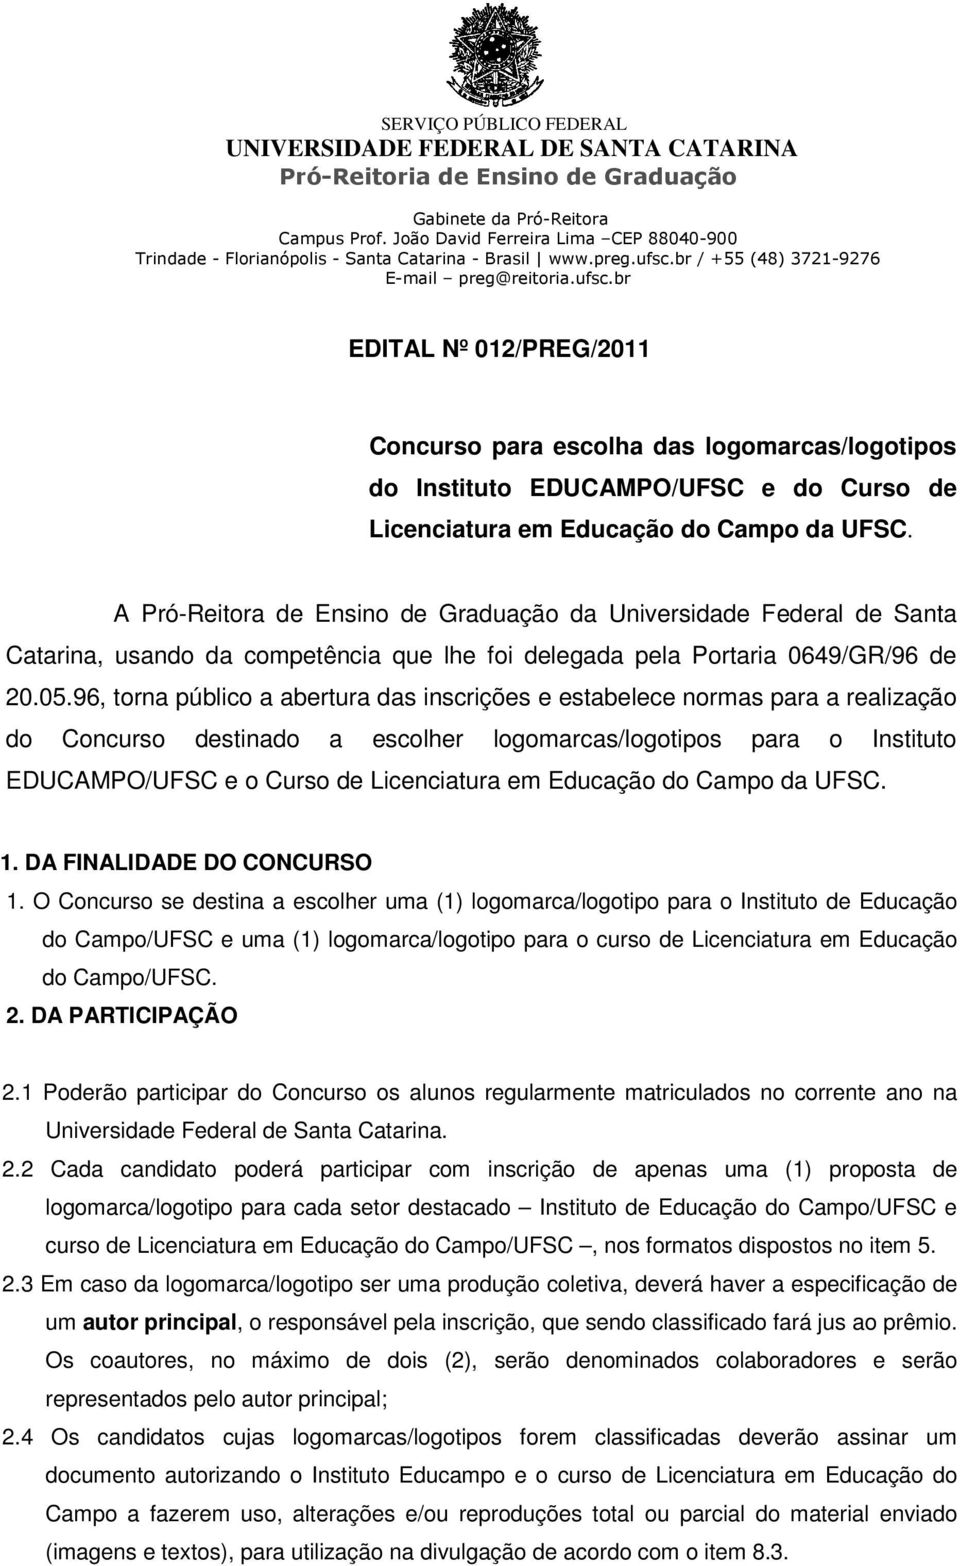 A Pró-Reitora de Ensino de Graduação da Universidade Federal de Santa Catarina, usando da competência que lhe foi delegada pela Portaria 0649/GR/96 de 20.05.